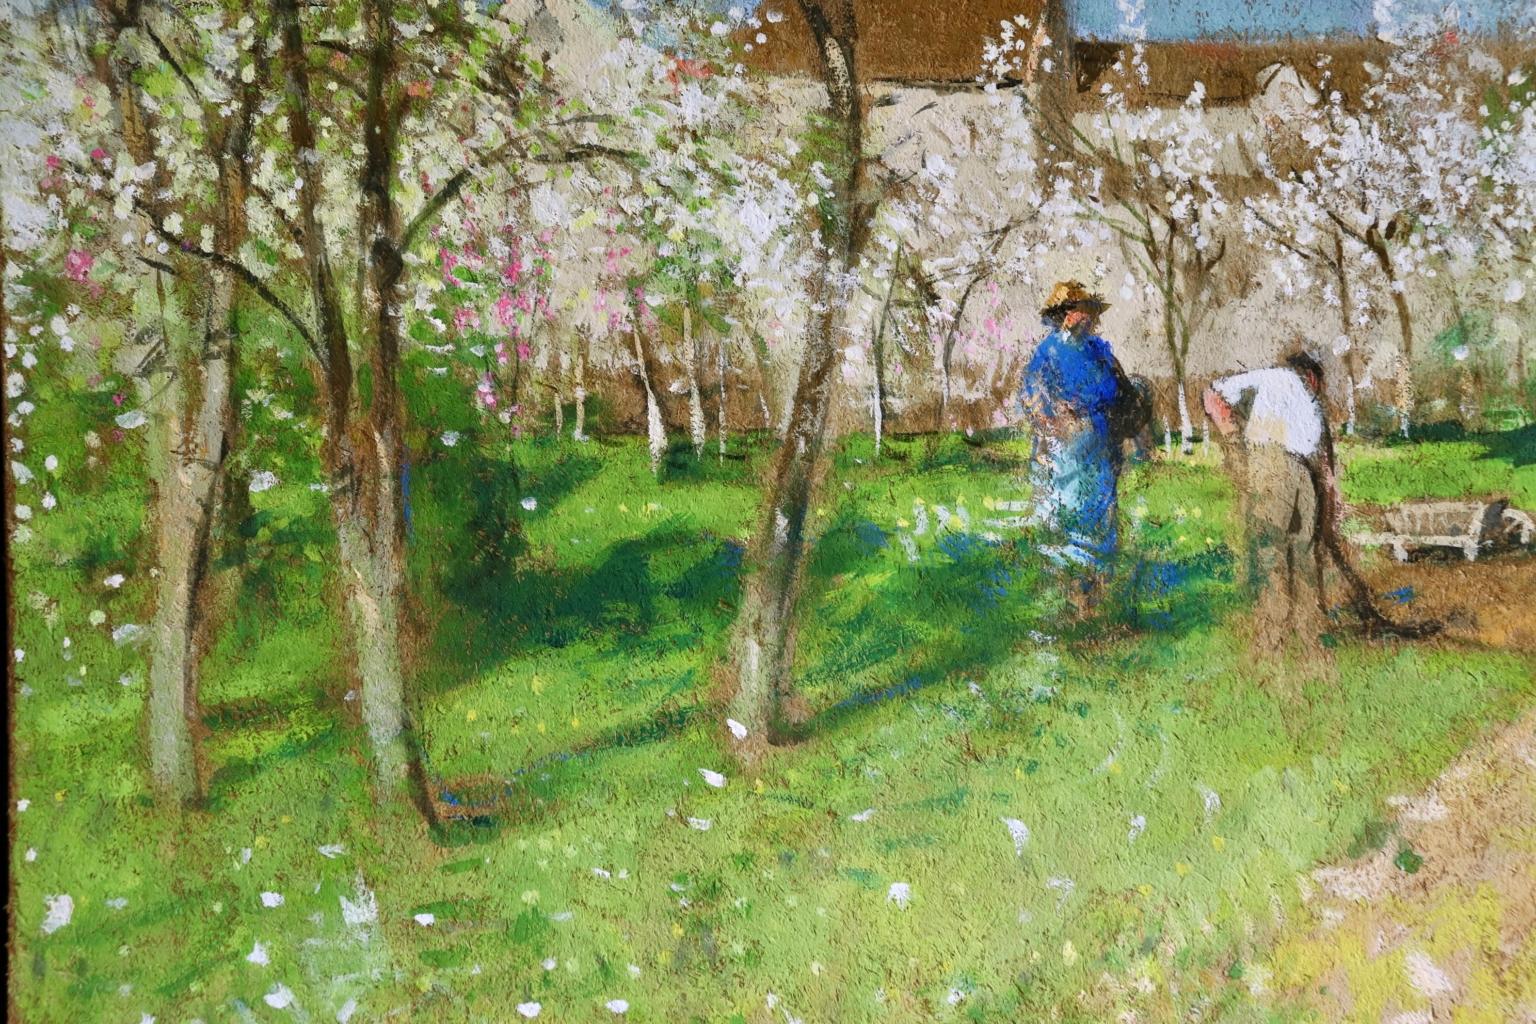 Les Jardiniers - Post Impressionist Oil, Figures in Landscape by P E Montezin - Post-Impressionist Painting by Pierre Eugene Montezin